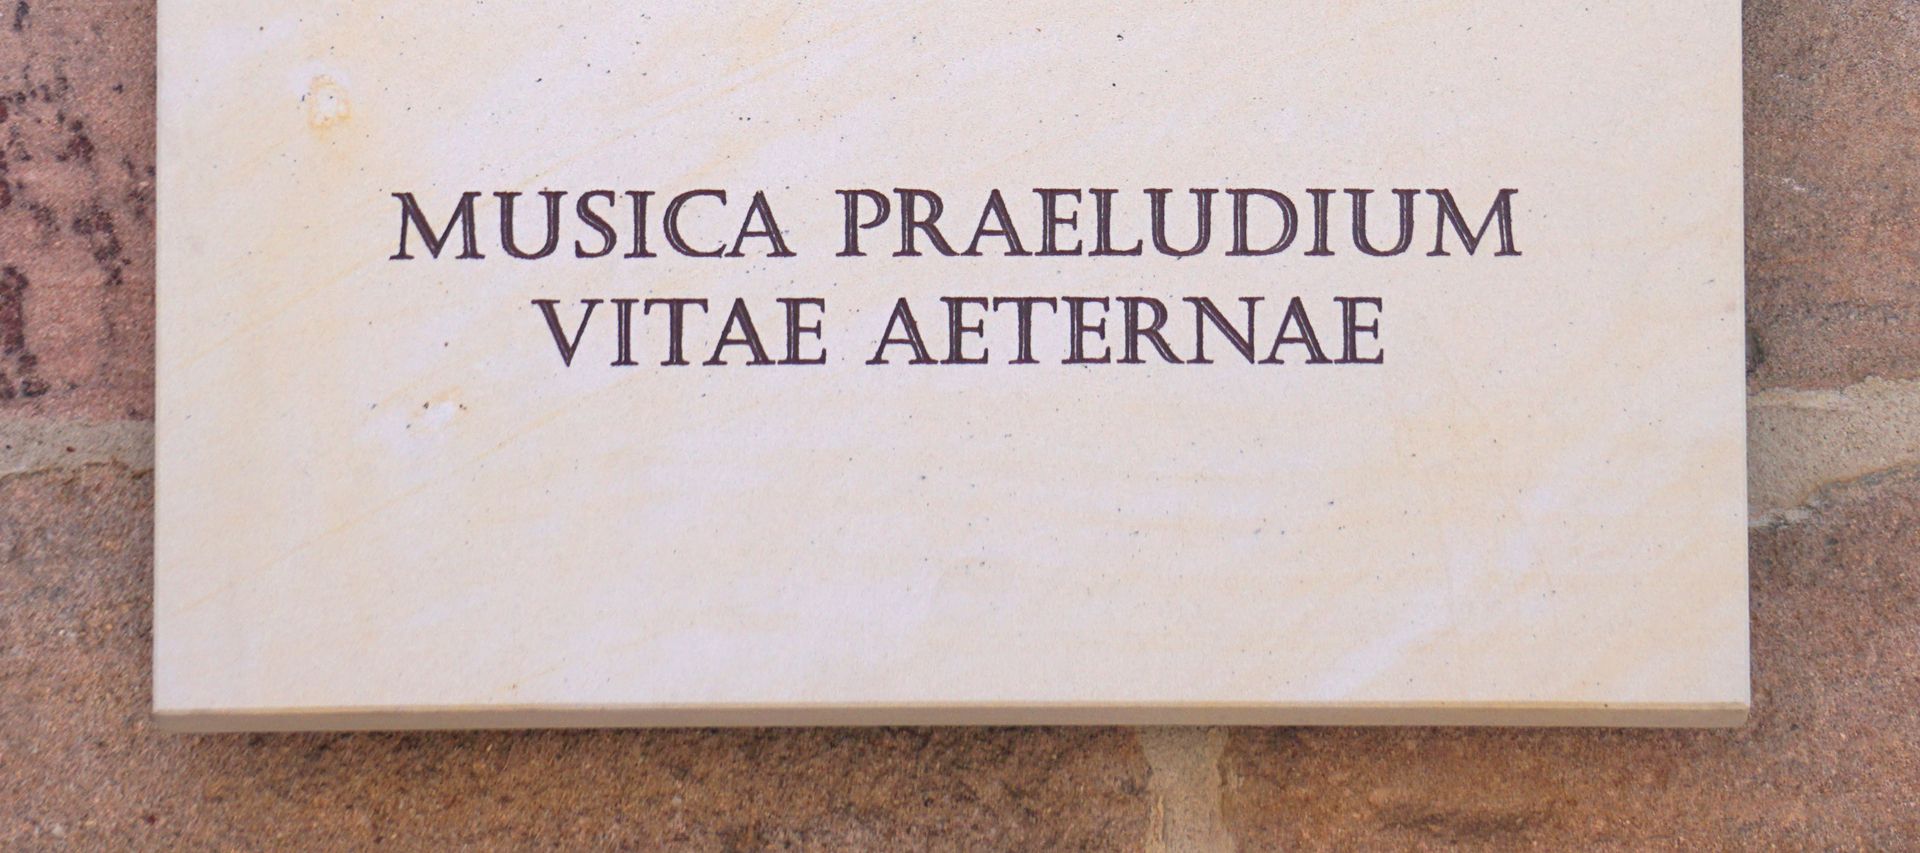 Pachelbel-Gedenktafel MUSICA PRAELUDIUM VITAE AETERNAE / Die Musik ist ein Vorspiel des ewigen Lebens